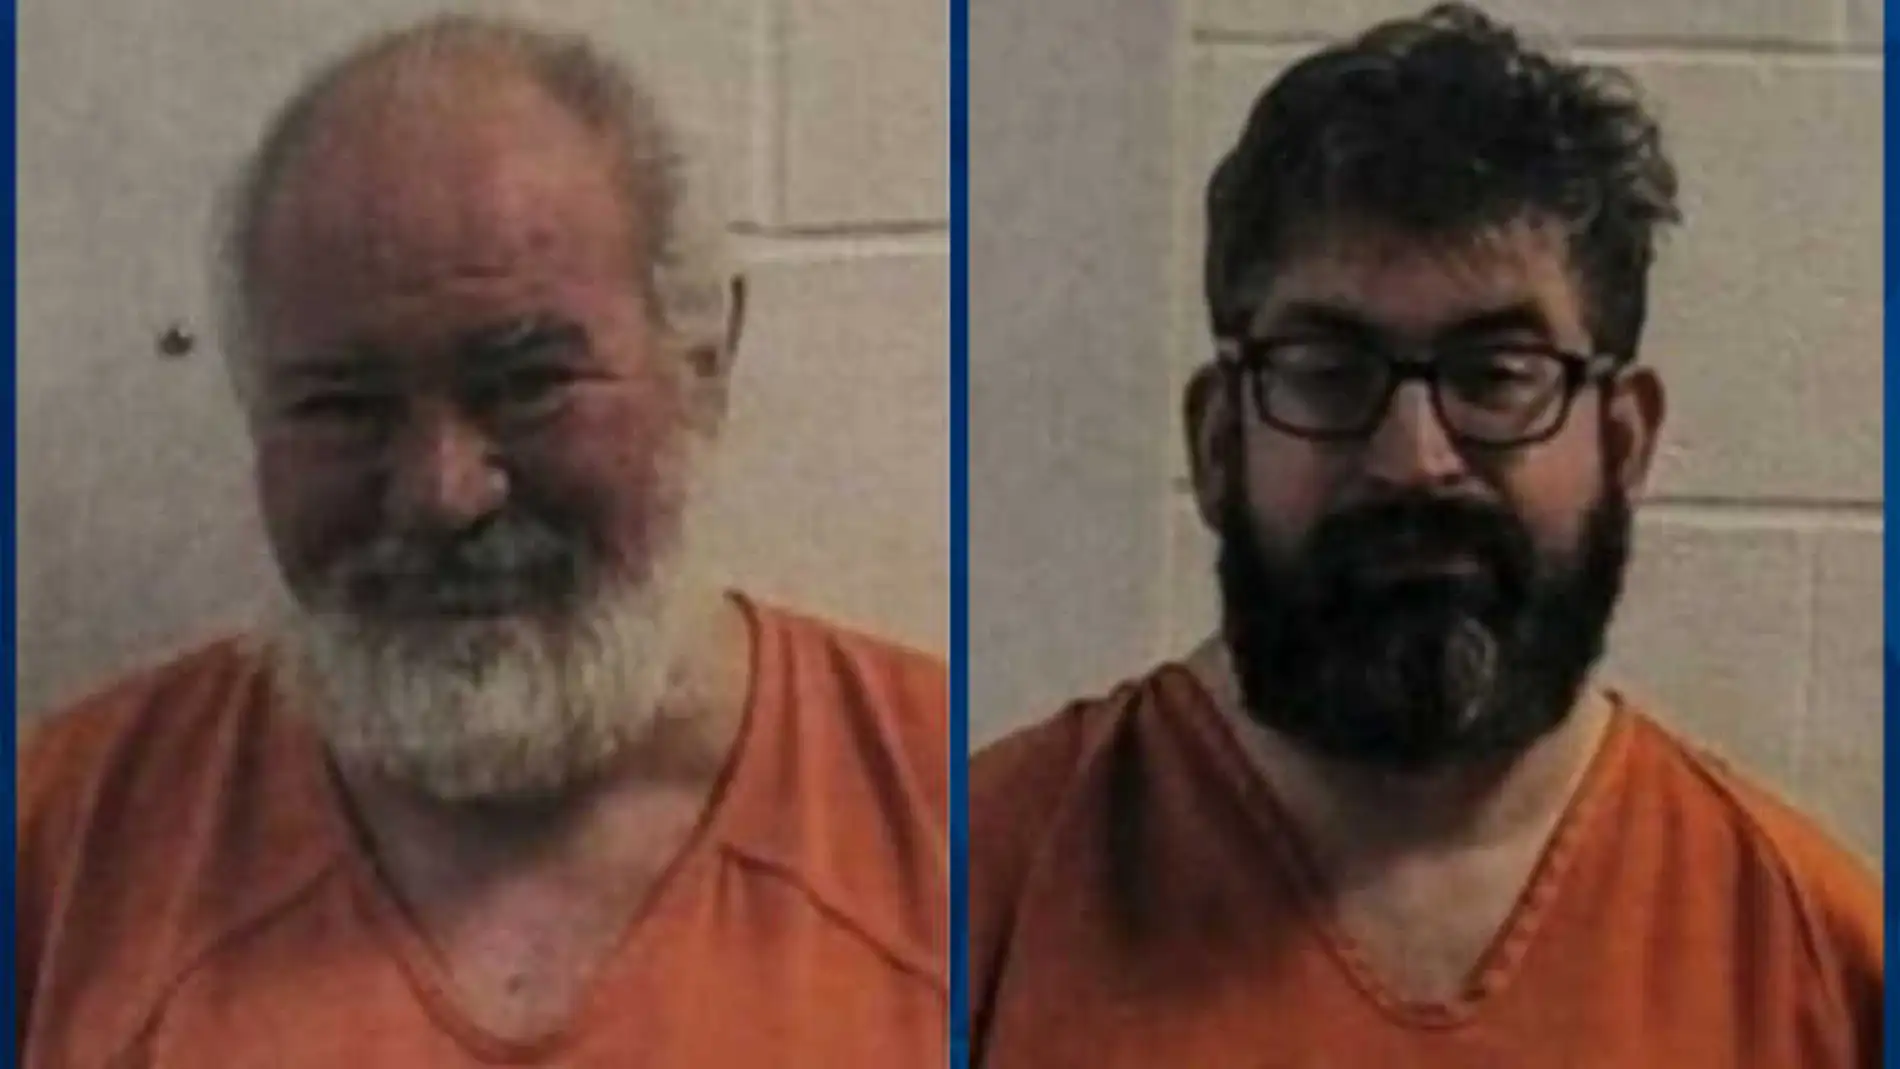 Thomas Gates, de 42 años, y Bob Allen, de 53, buscaban a víctimas a través de internet para cumplir sus macabras fantasías